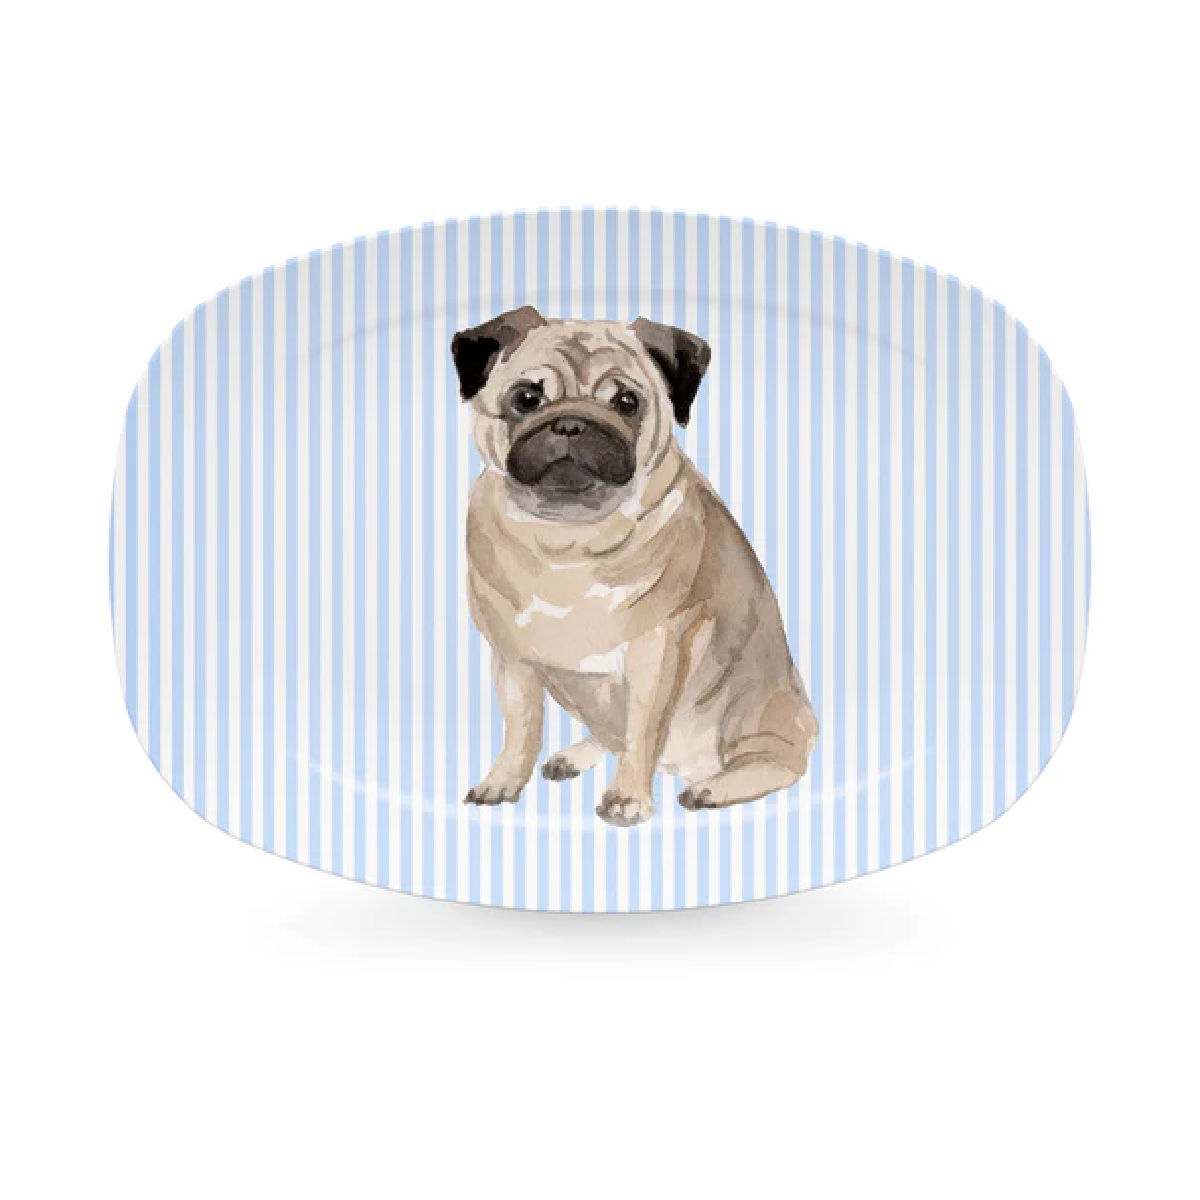 Mariposa - Best Friends Pug Platter